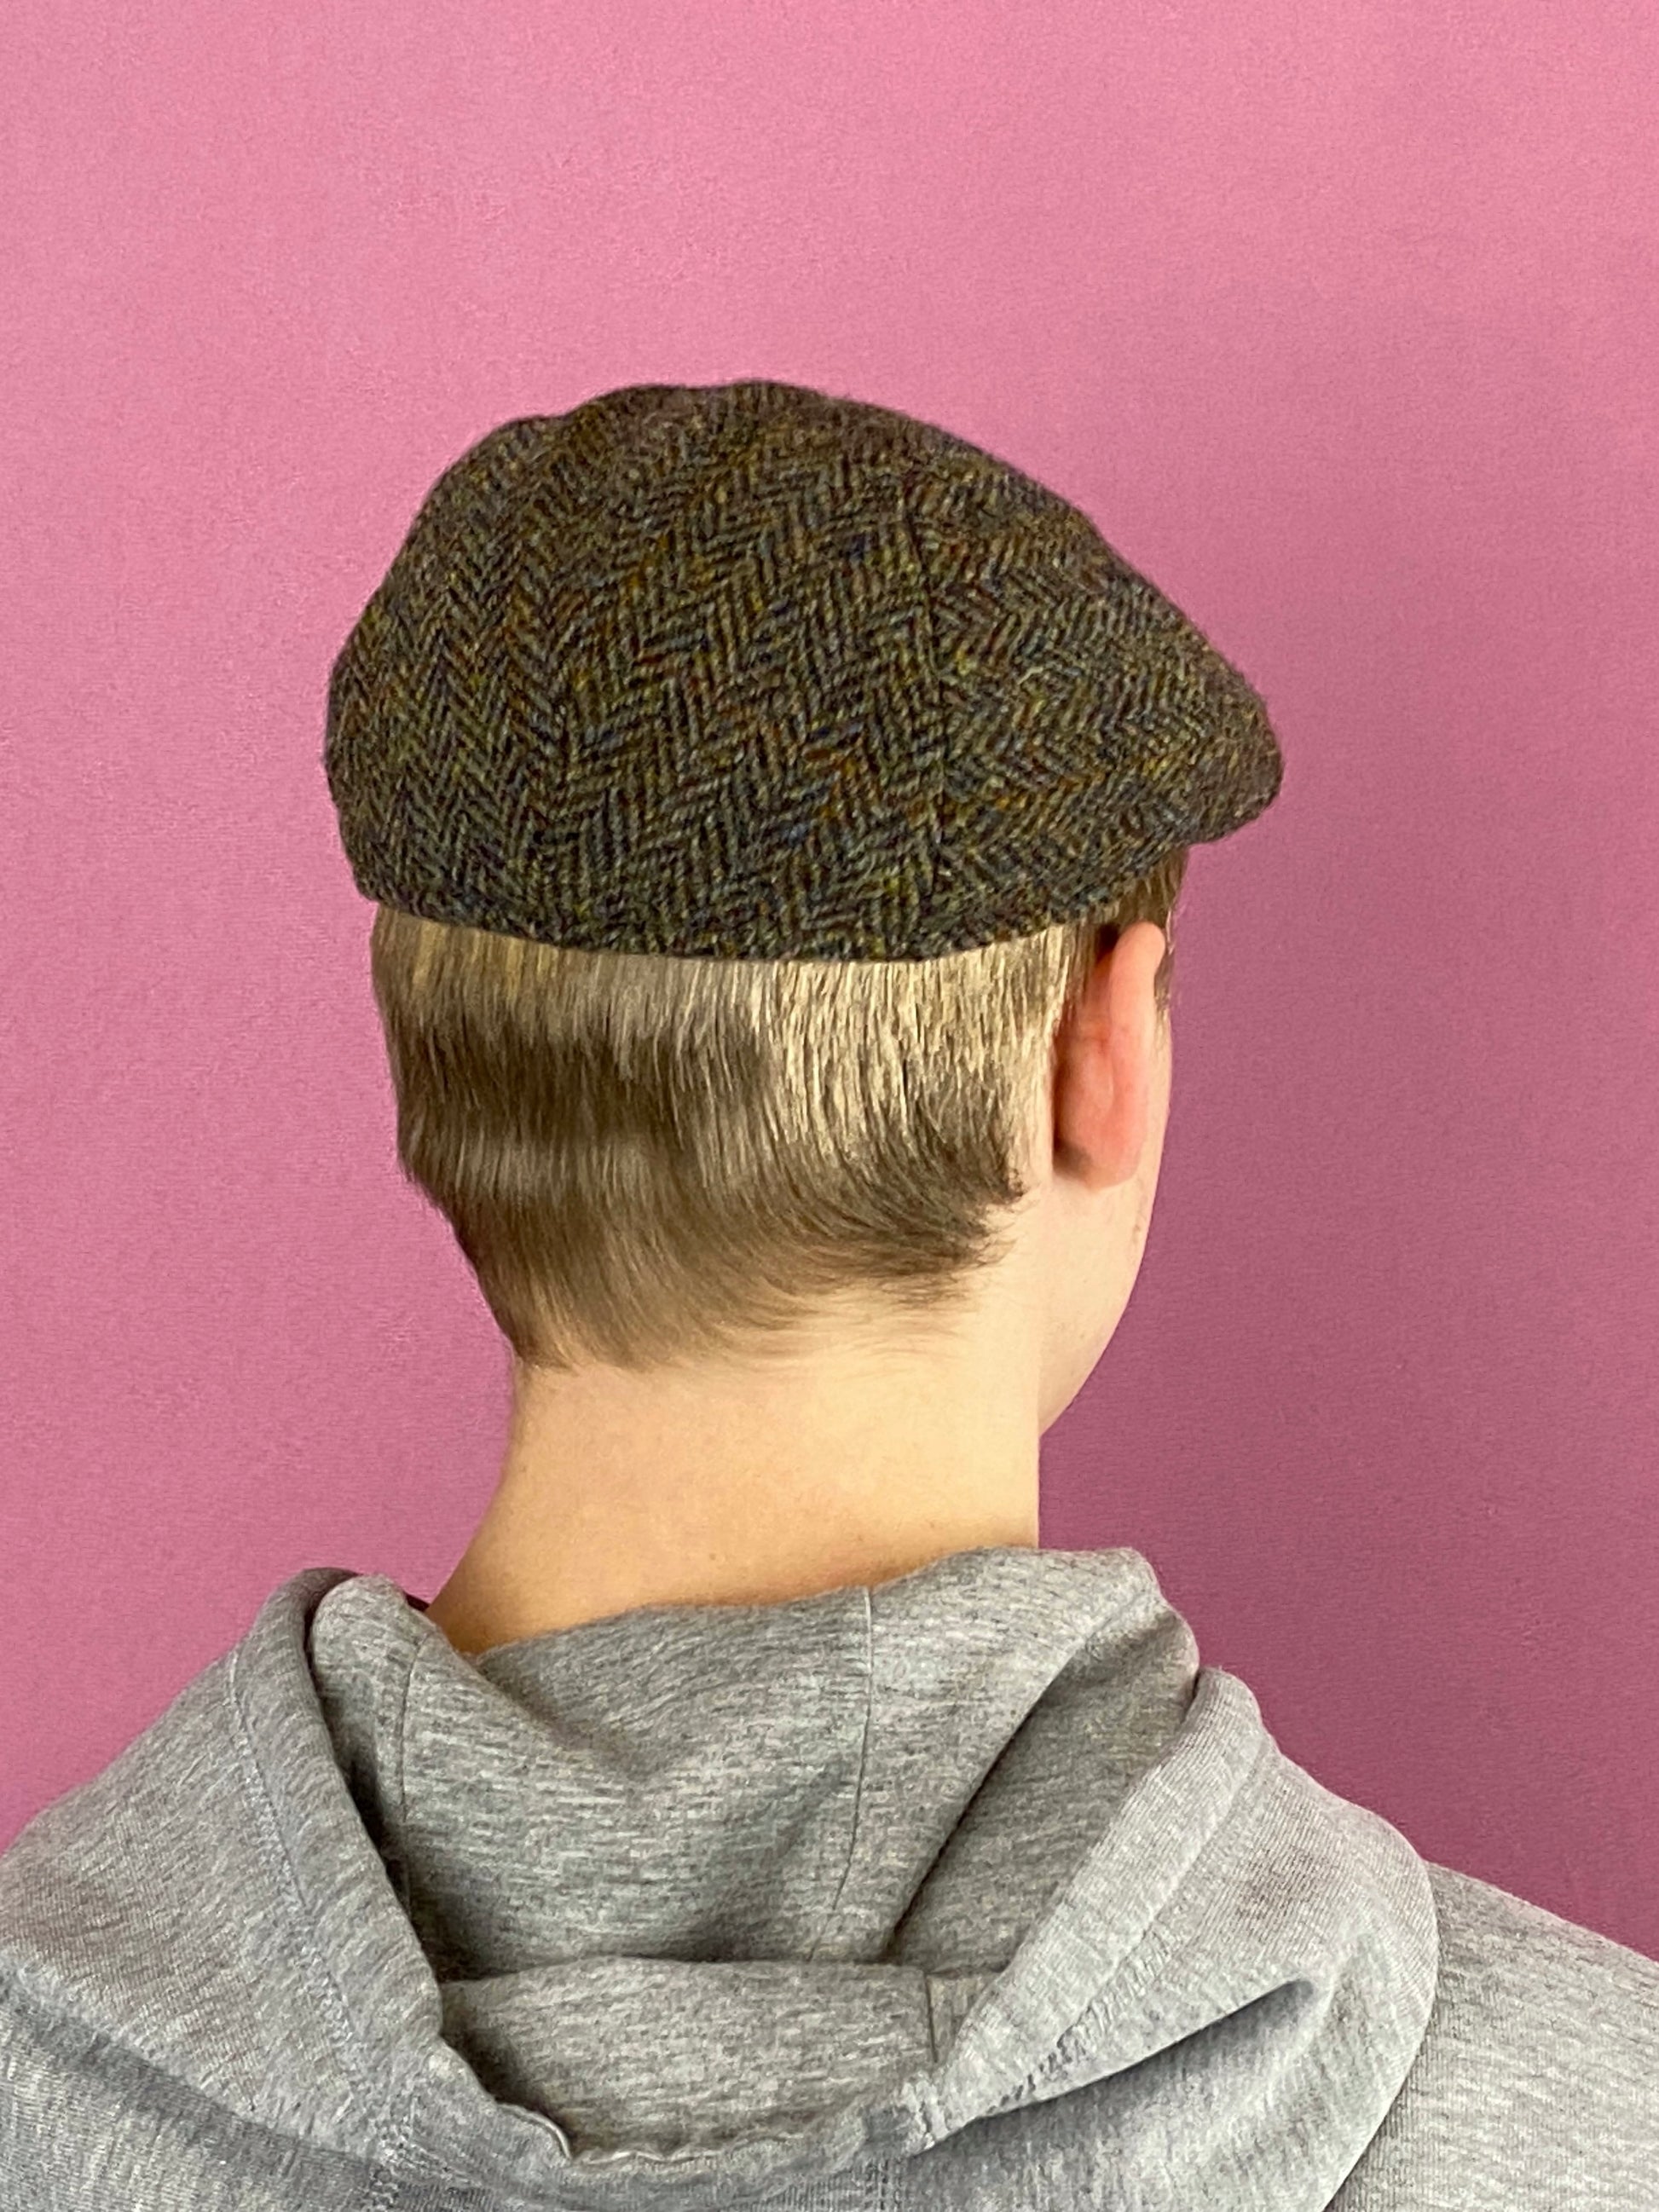 Harris Tweed Vintage Men's Flat Cap - Gray & Brown Wool